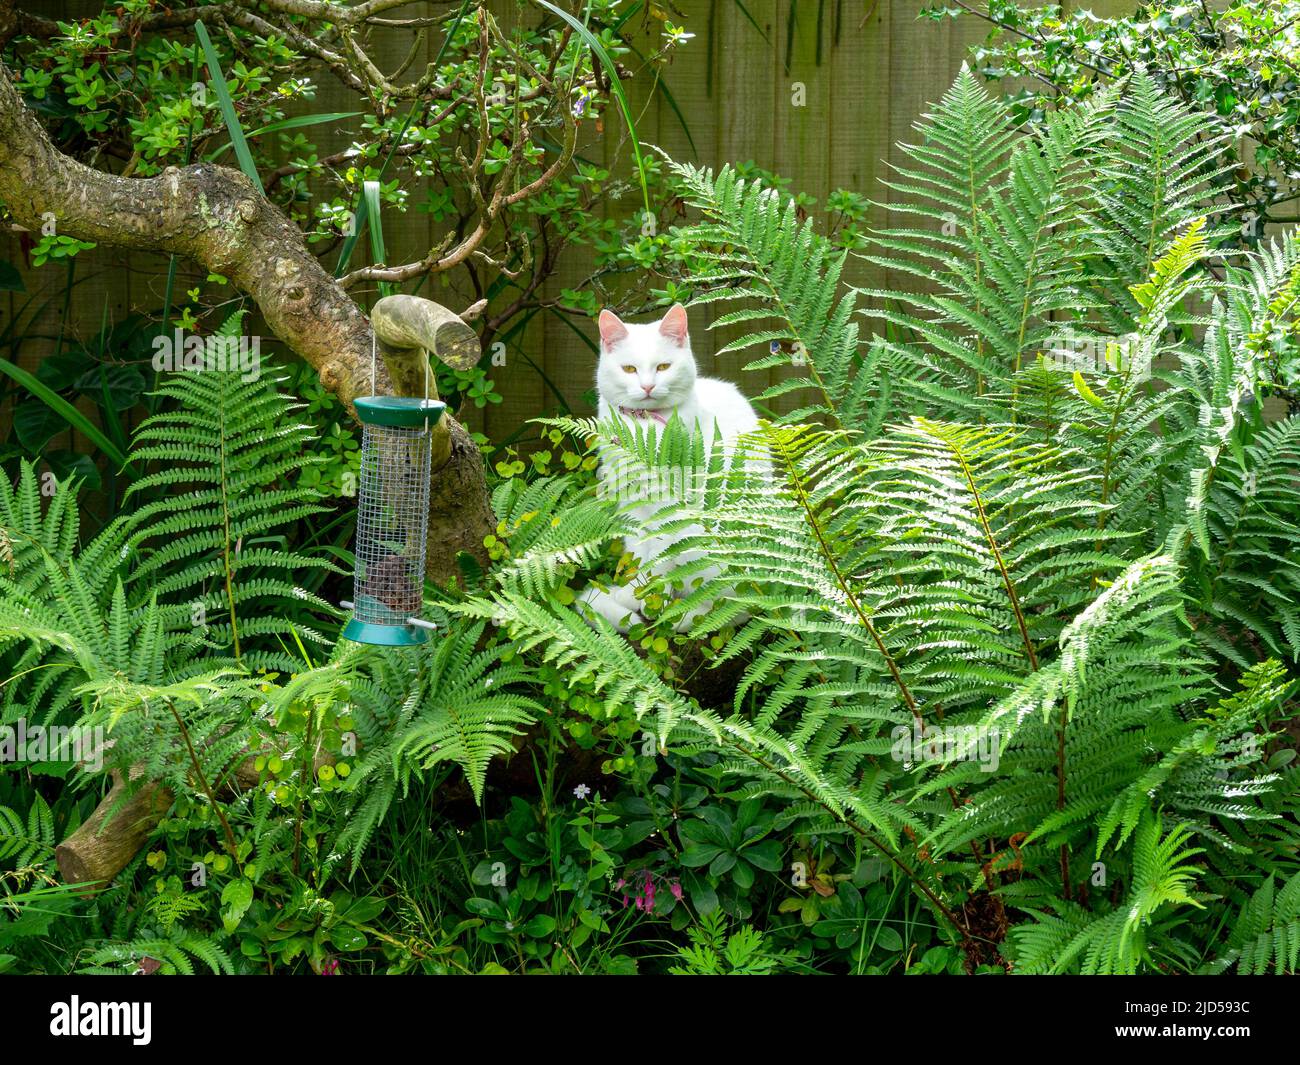 Gato blanco entre helechos observando un alimentador de aves de jardín Foto de stock